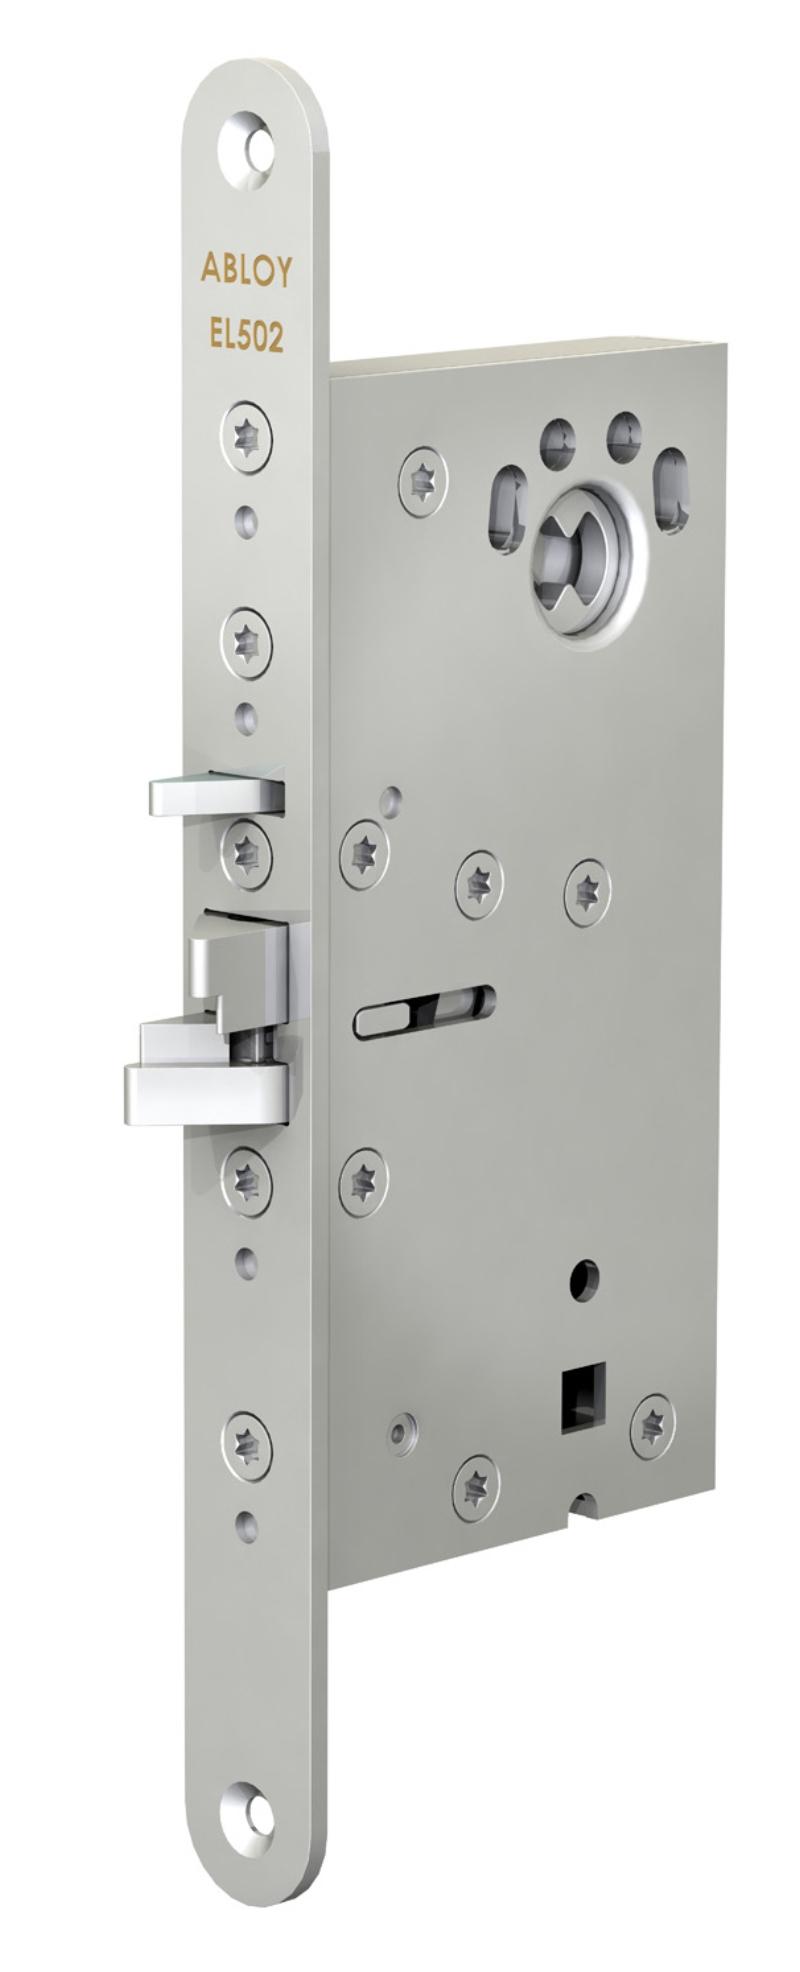 Abloy magnetic lock EL502/50